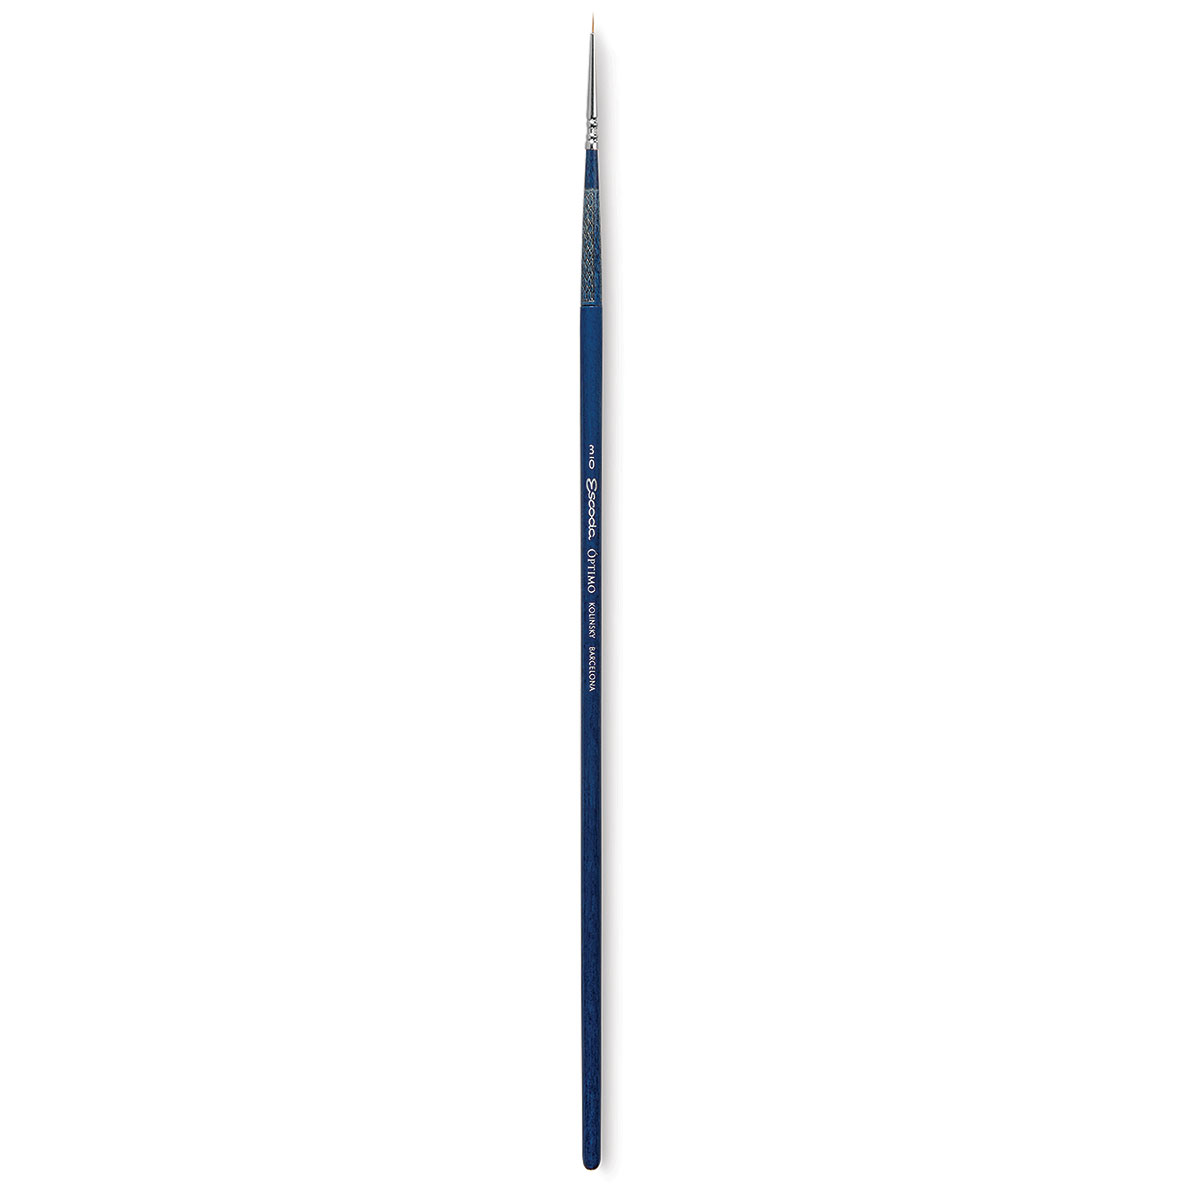 Escoda Optimo Kolinsky Sable Brush - Pointed Round, Long Handle, Size 3/0 